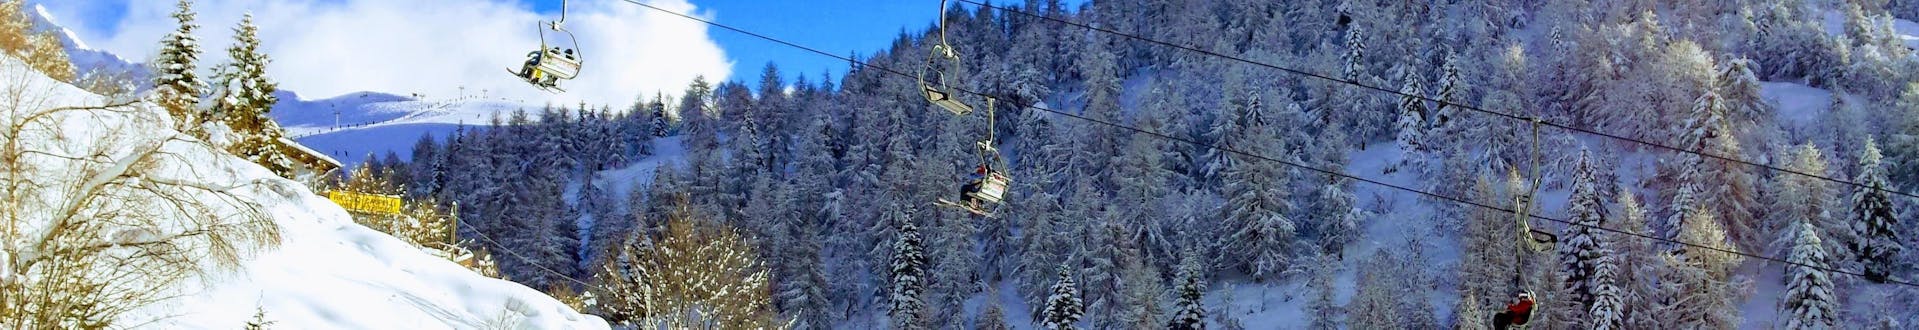 Ski lift going up the slopes in ski resort Piani di Bobbio, Italy.